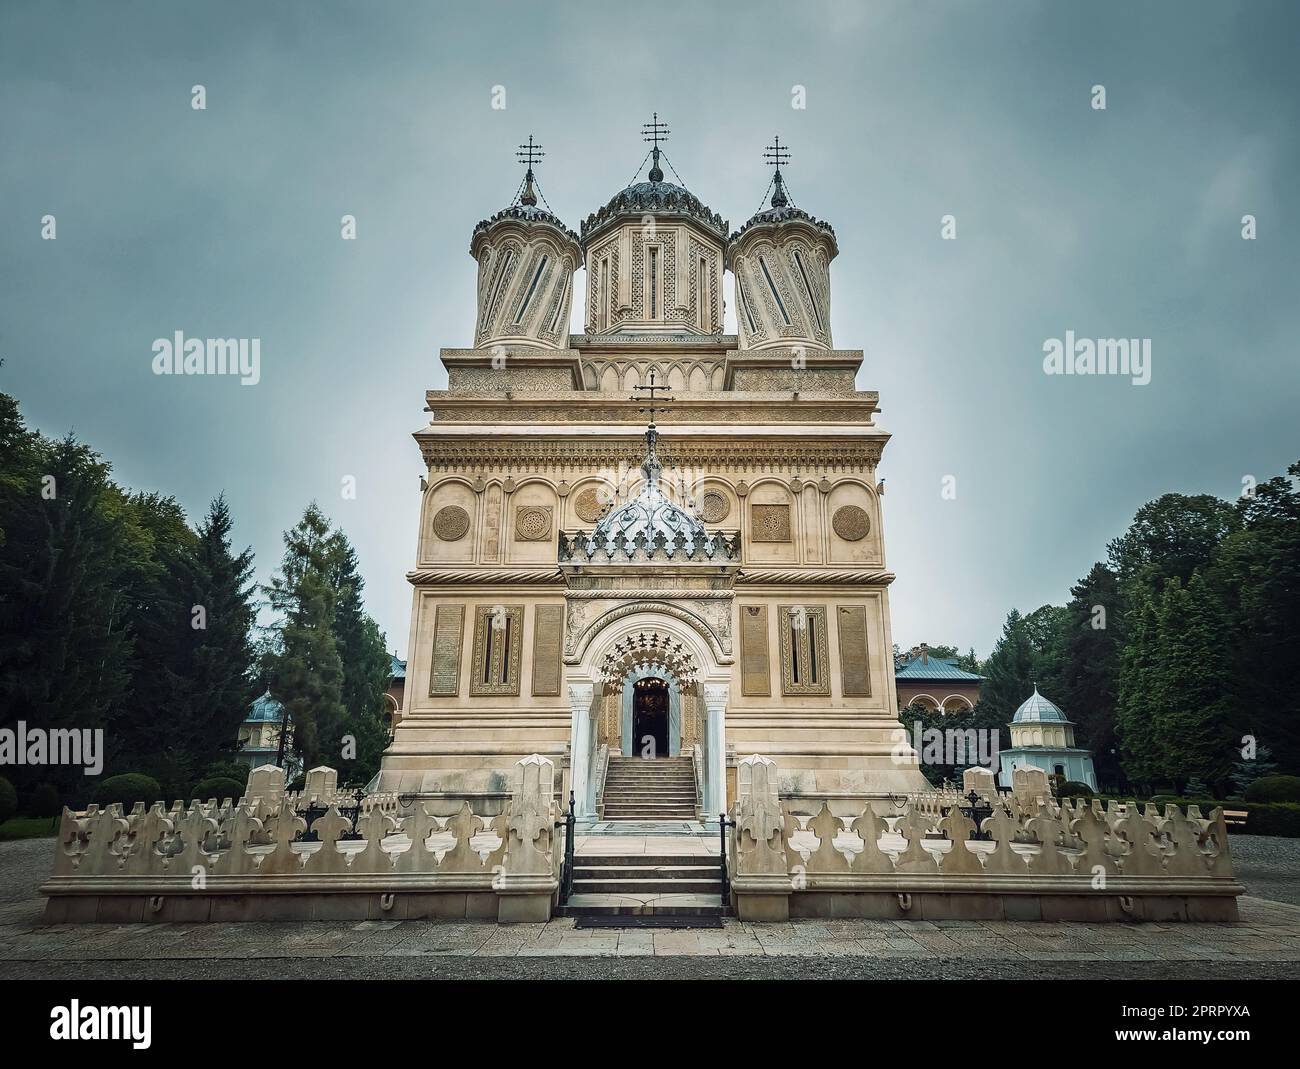 Curtea de Arges antico monastero cristiano-ortodosso in Romania. Bella facciata del Duomo e dettagli architettonici dalla leggenda dell'artigiano Manole Foto Stock